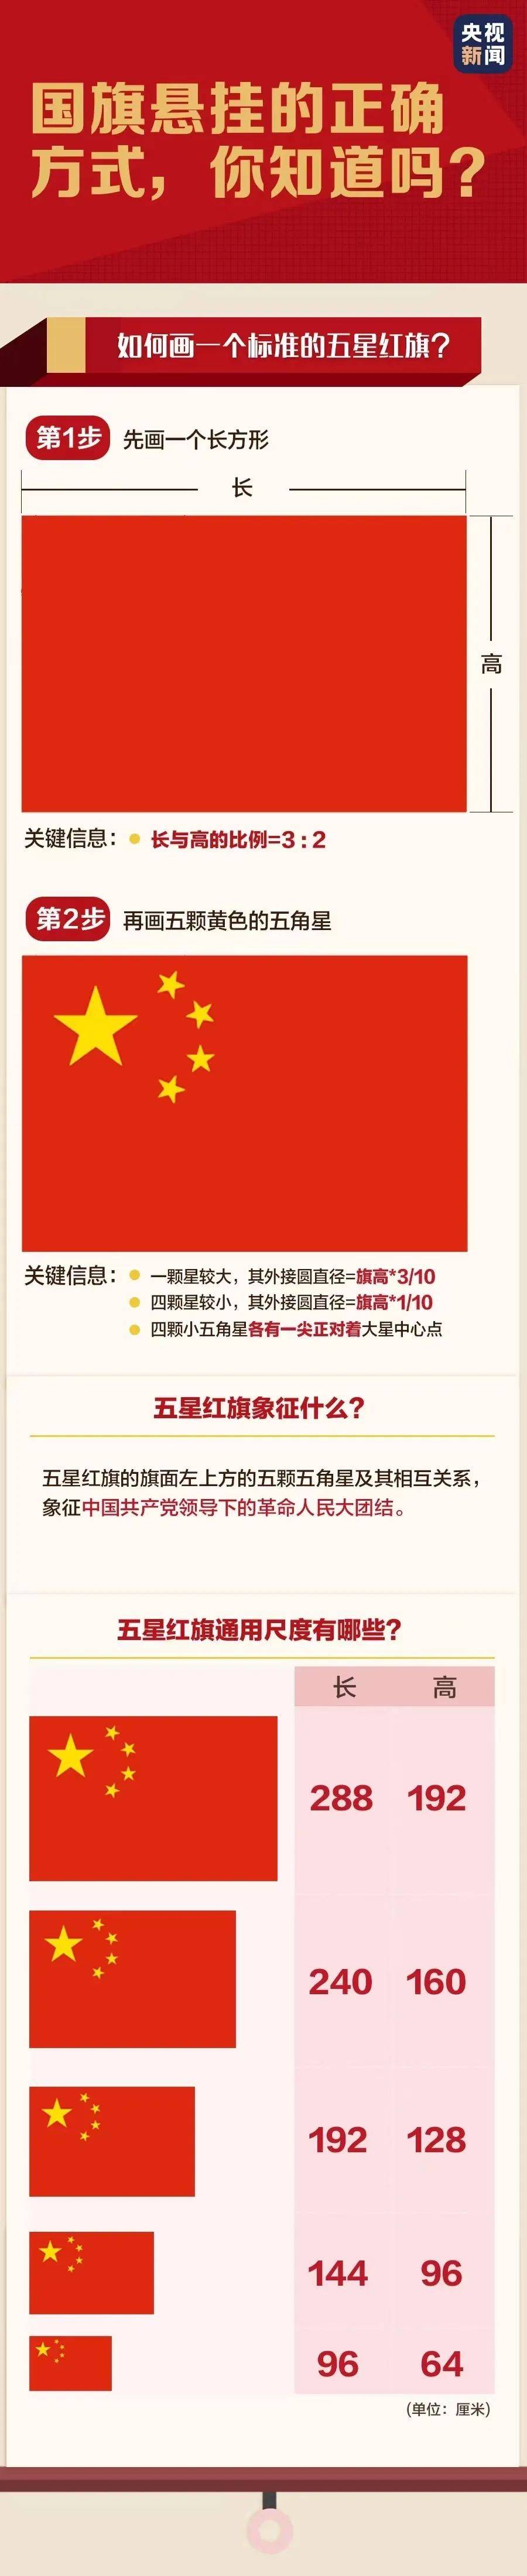 正确使用国旗,《中华人民共和国国旗法》全文来了!